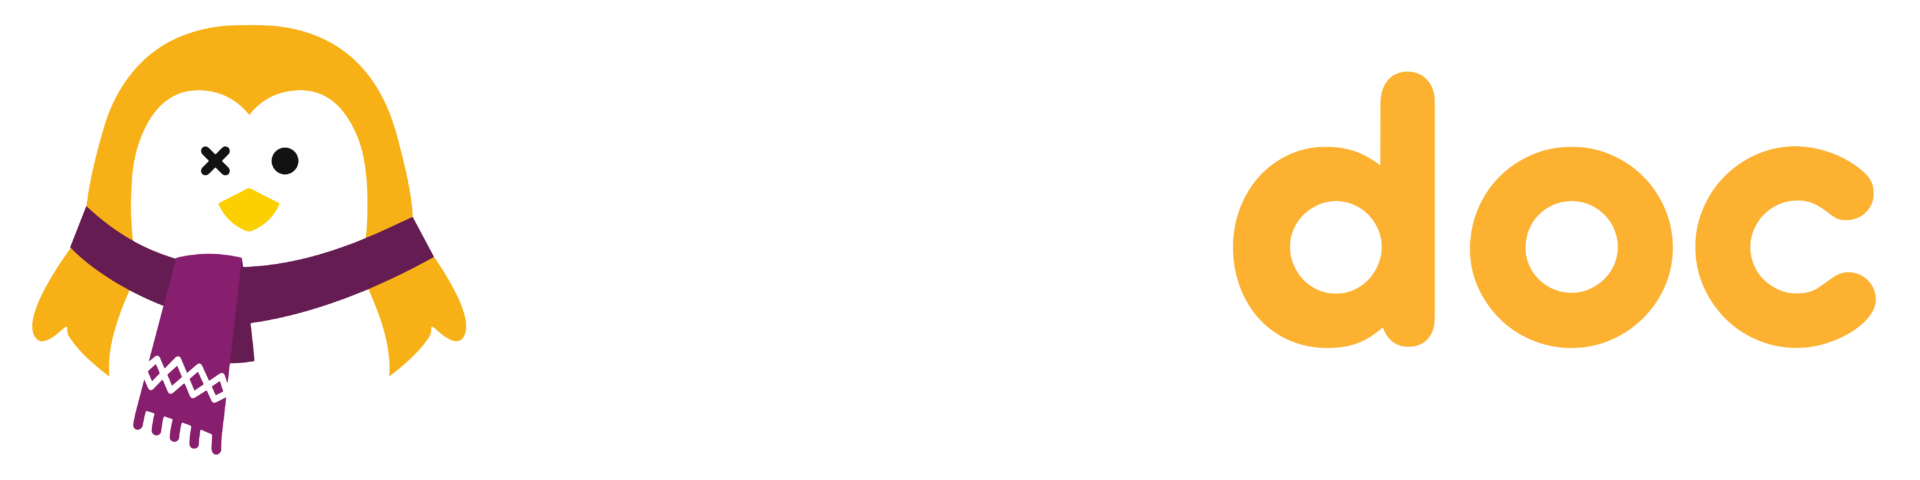 Logo OneDoc